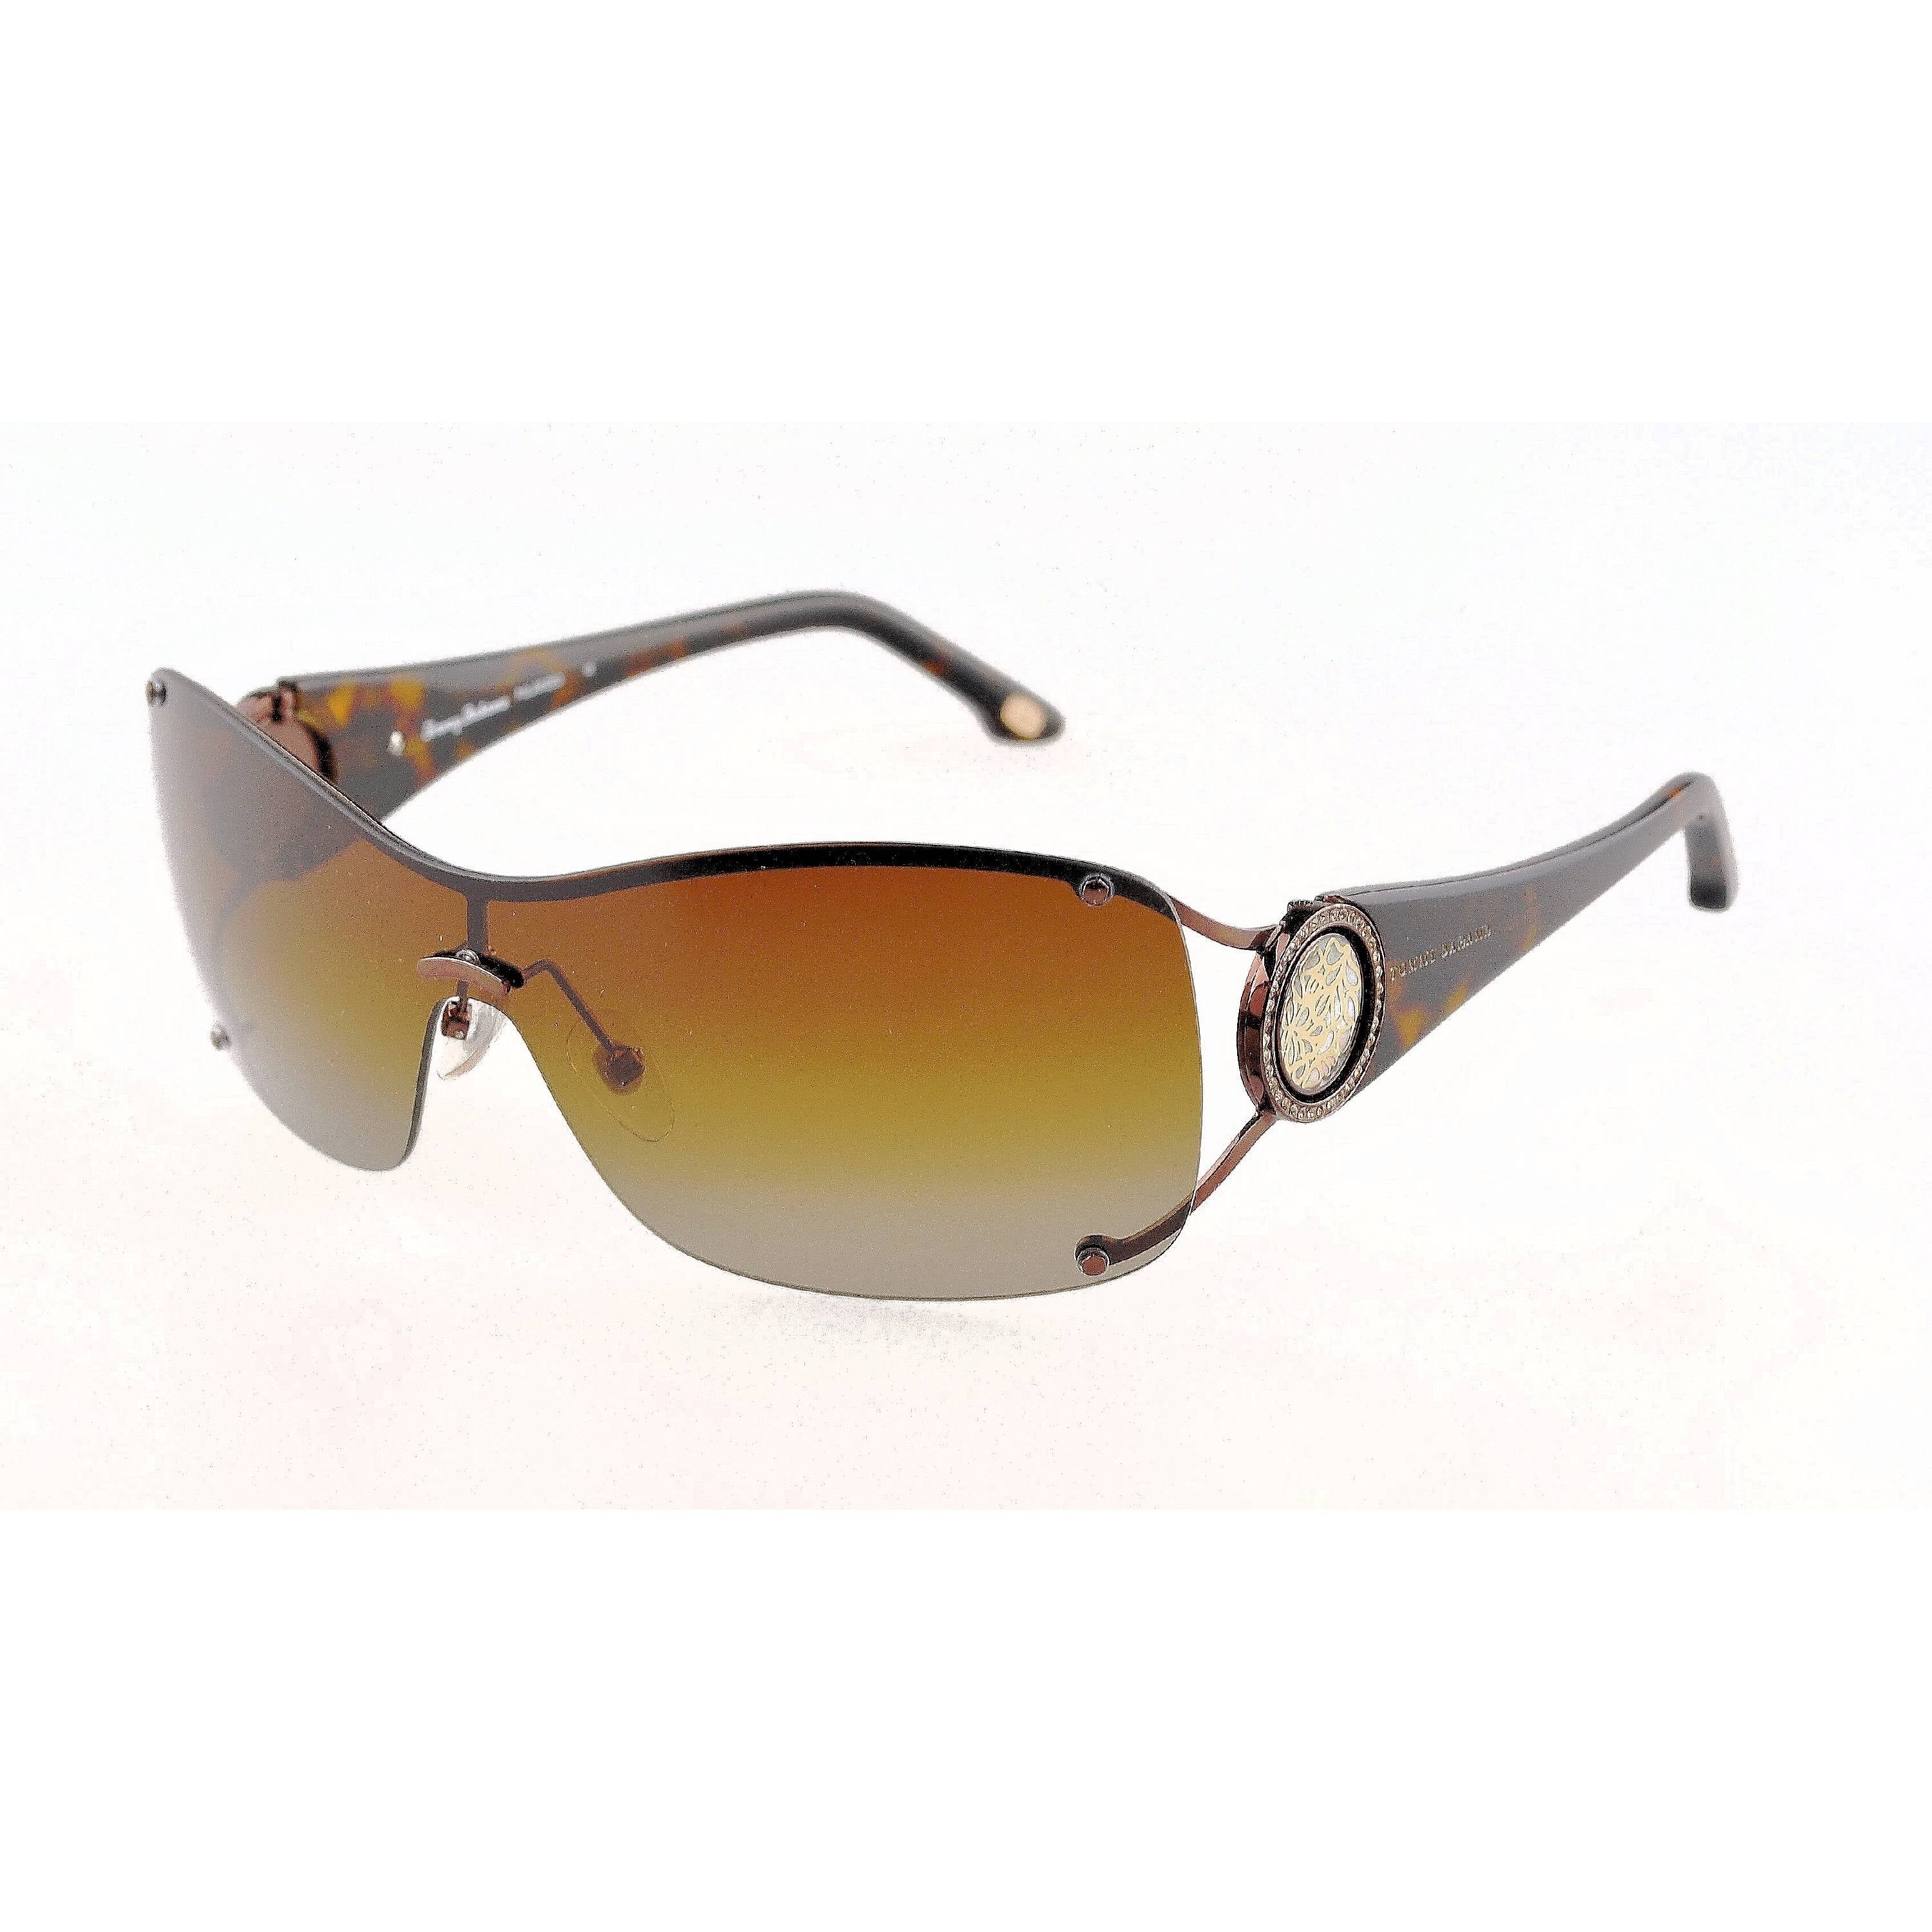 Tommy Bahama Shades Of Pearl Polarized Sunglasses - Walmart.com